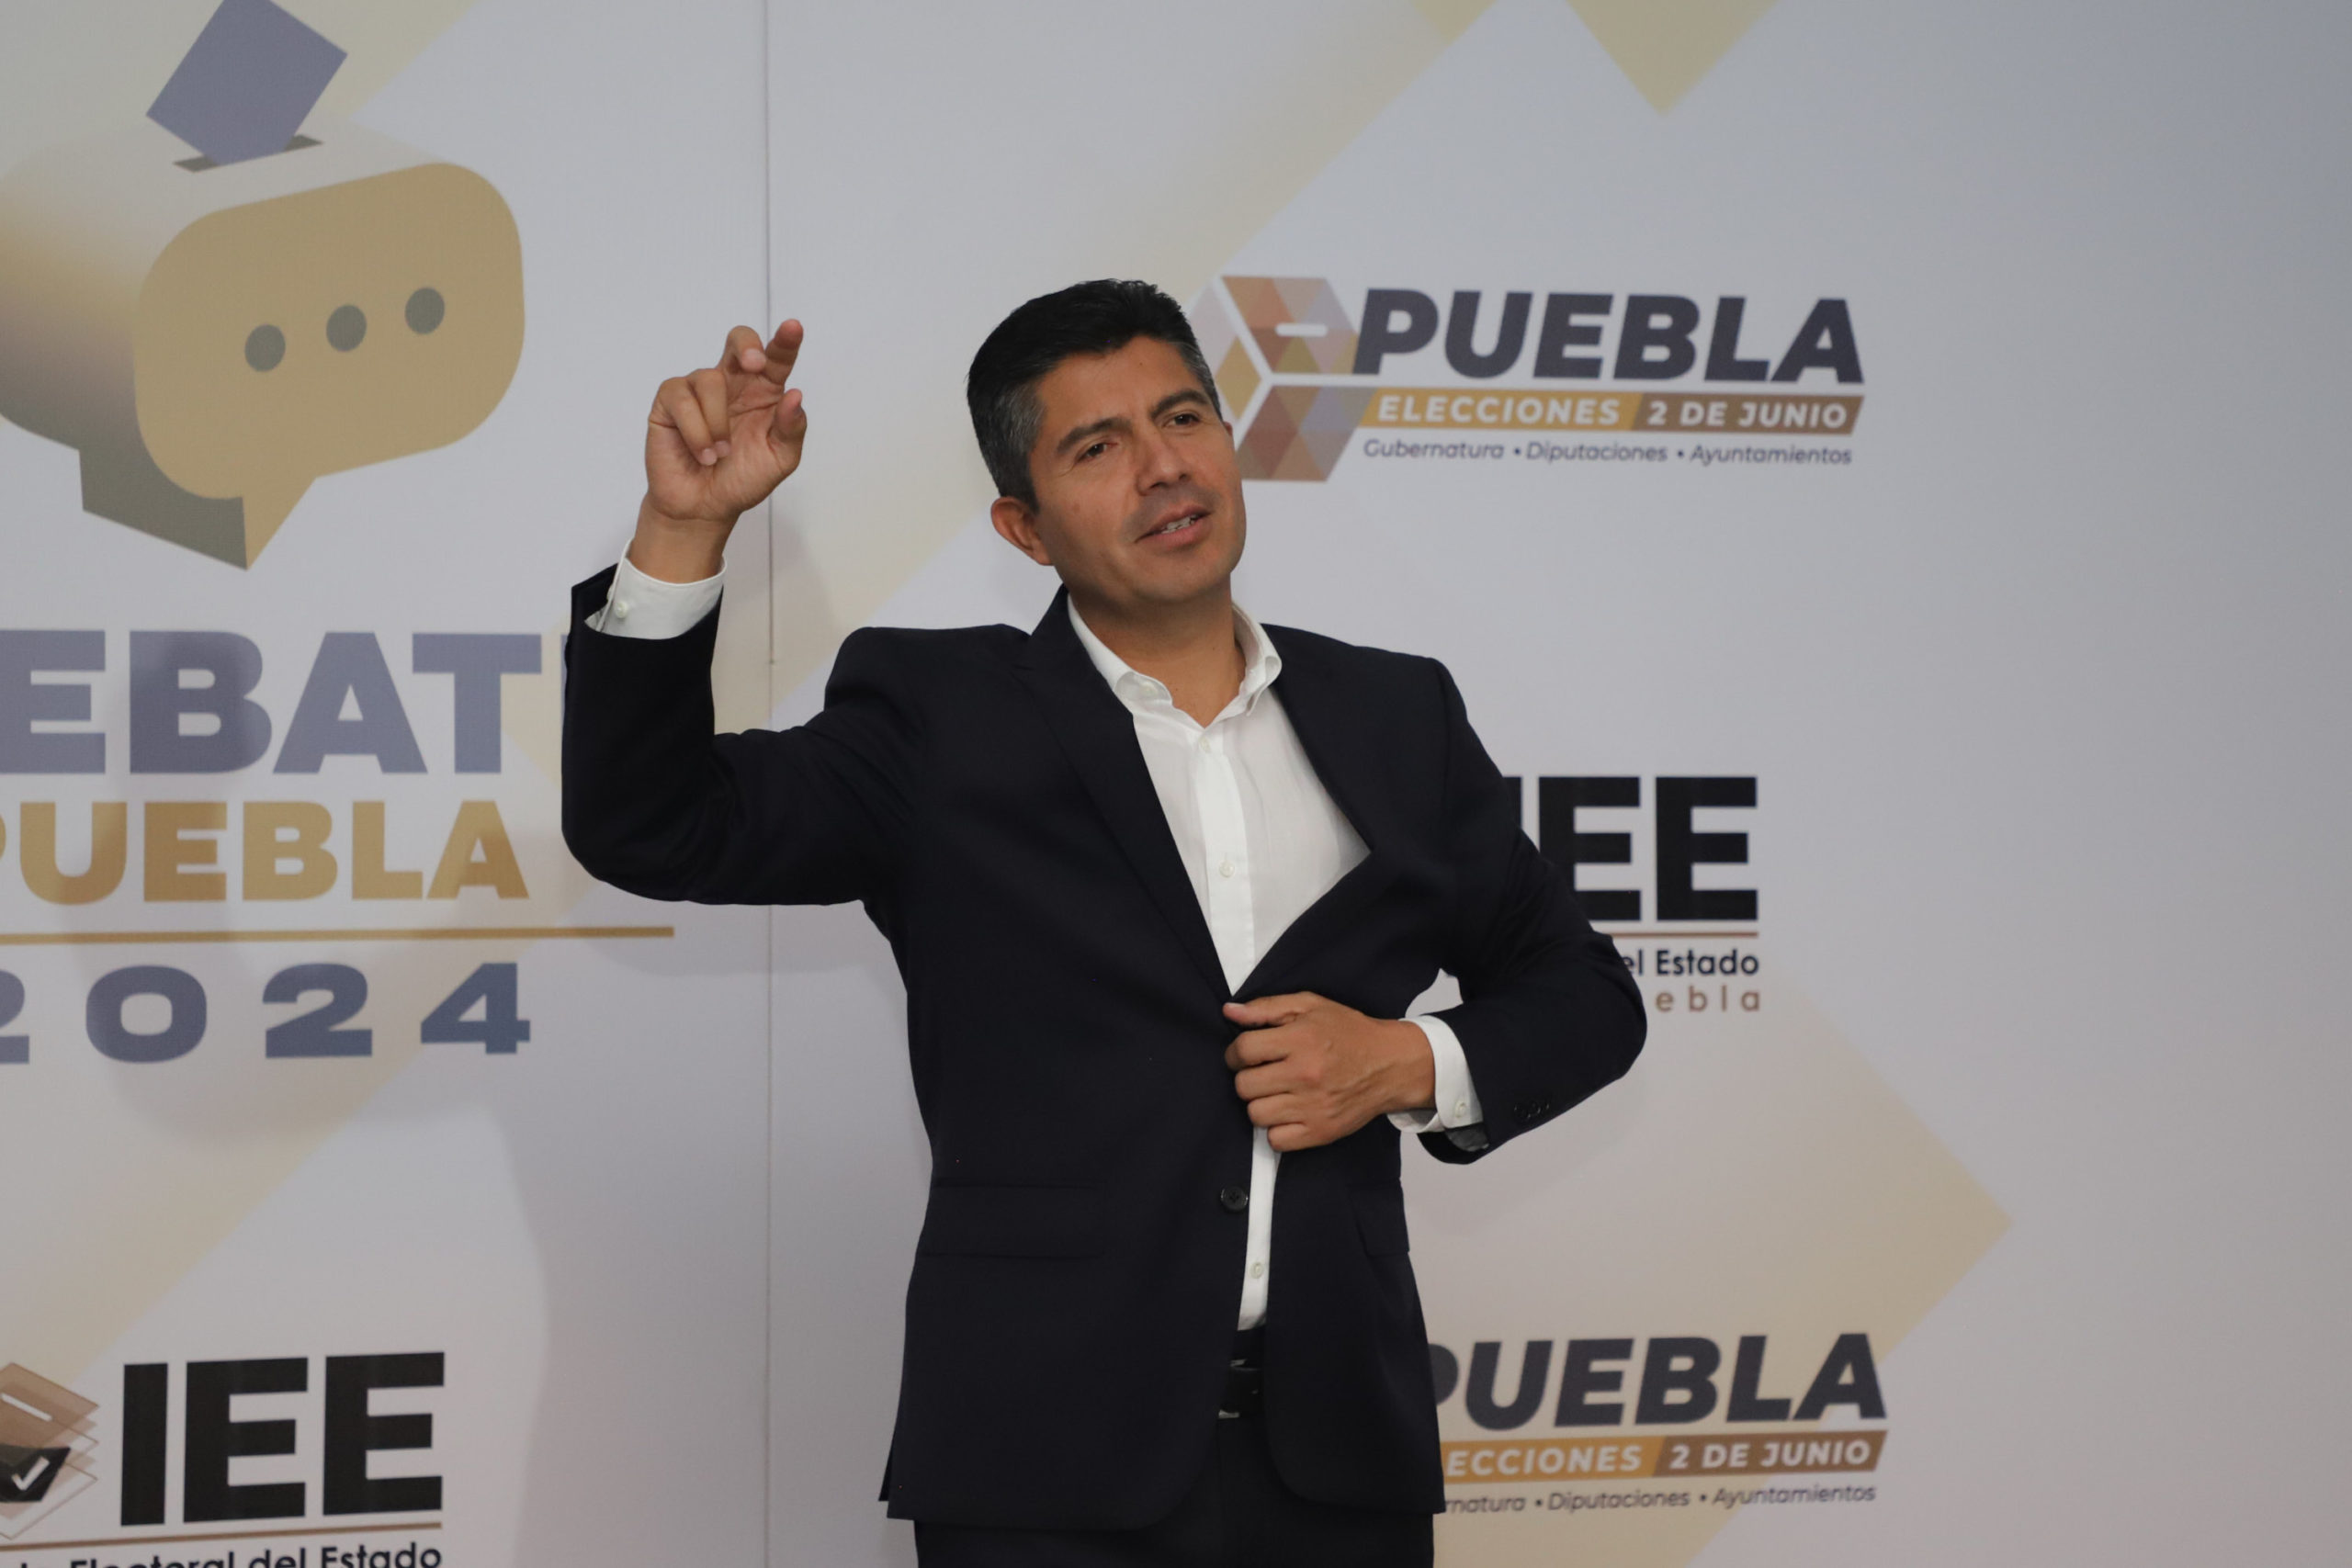 Buen round entre candidatos al gobierno de Puebla